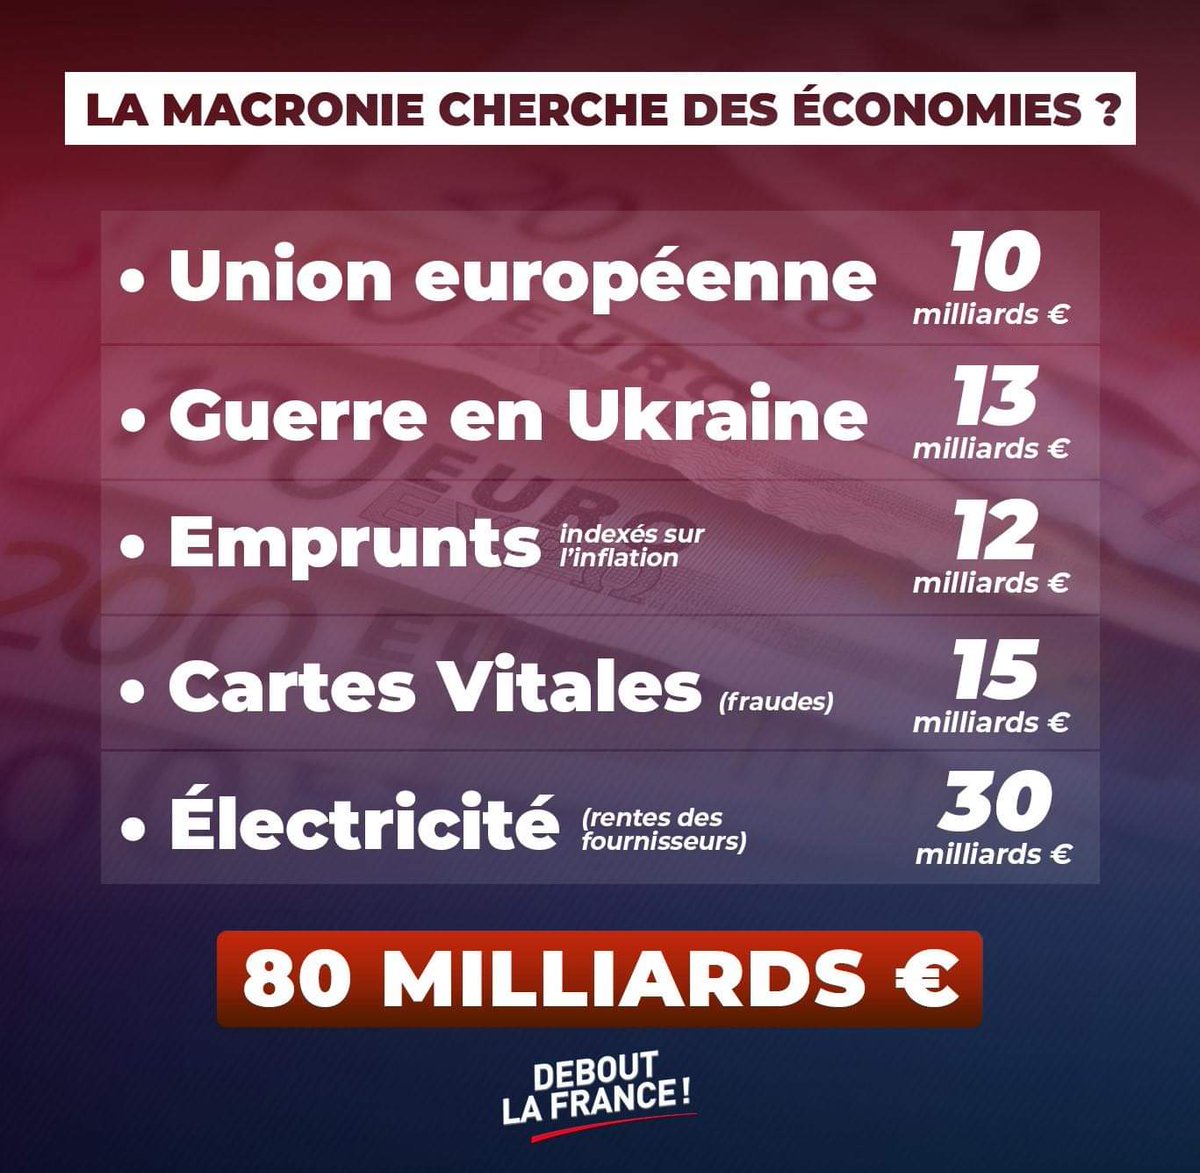 #Macron #MacronLaHonte #MacronDémission #MacronLeFossoyeur #MacronLeFou #MacronNousPrendPourDesCons #Attal20H #Attal #LeMaire #LemaireDémission #faillite
#LeMaire #Attal #Macron cherchent des économies... Des petite idées pour eux 👇